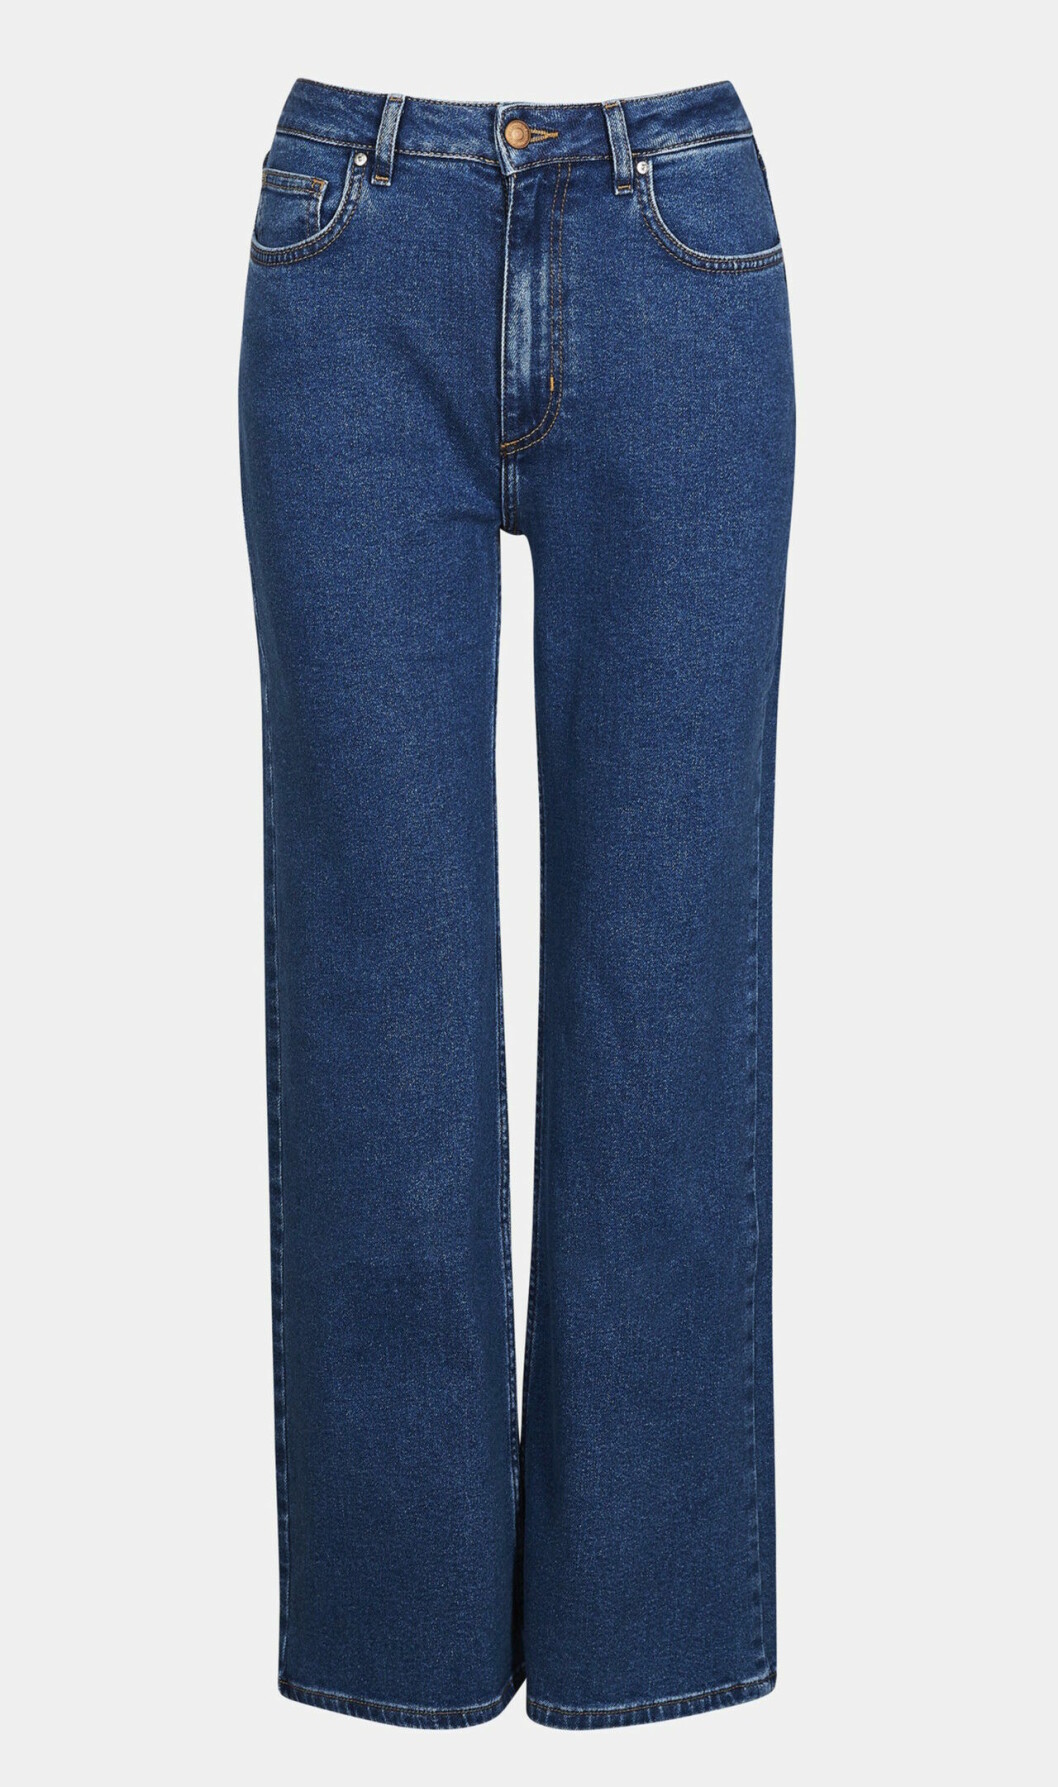 Jeans för dam till våren 2019 med hög midja